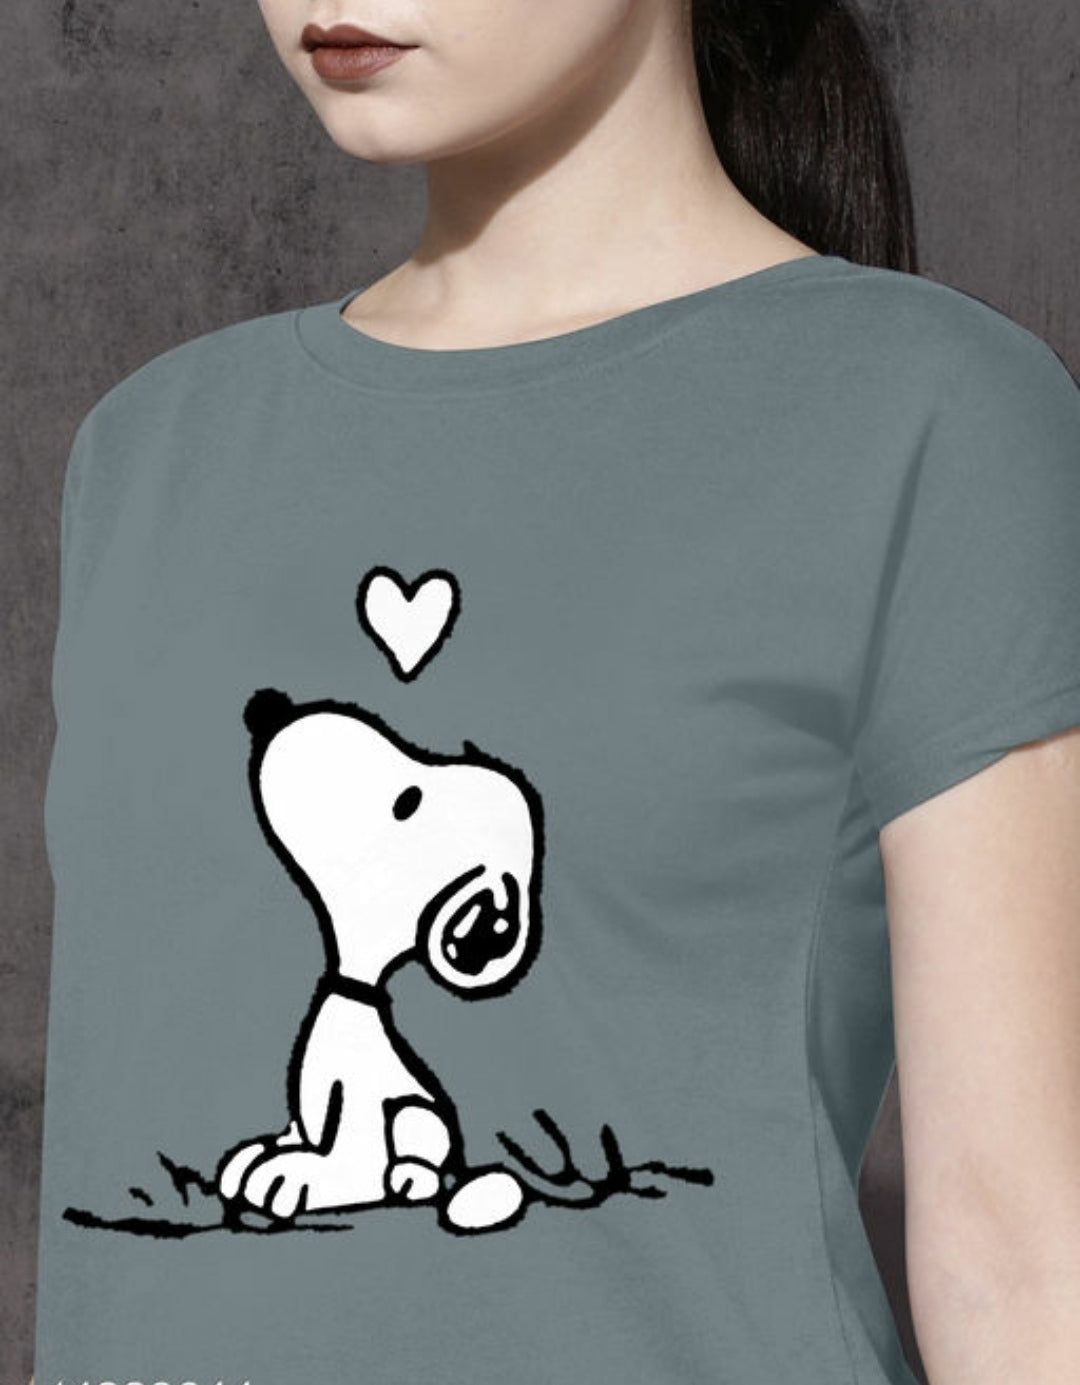 Stylish Women Short Sleeves Dog Lover Tshirts.